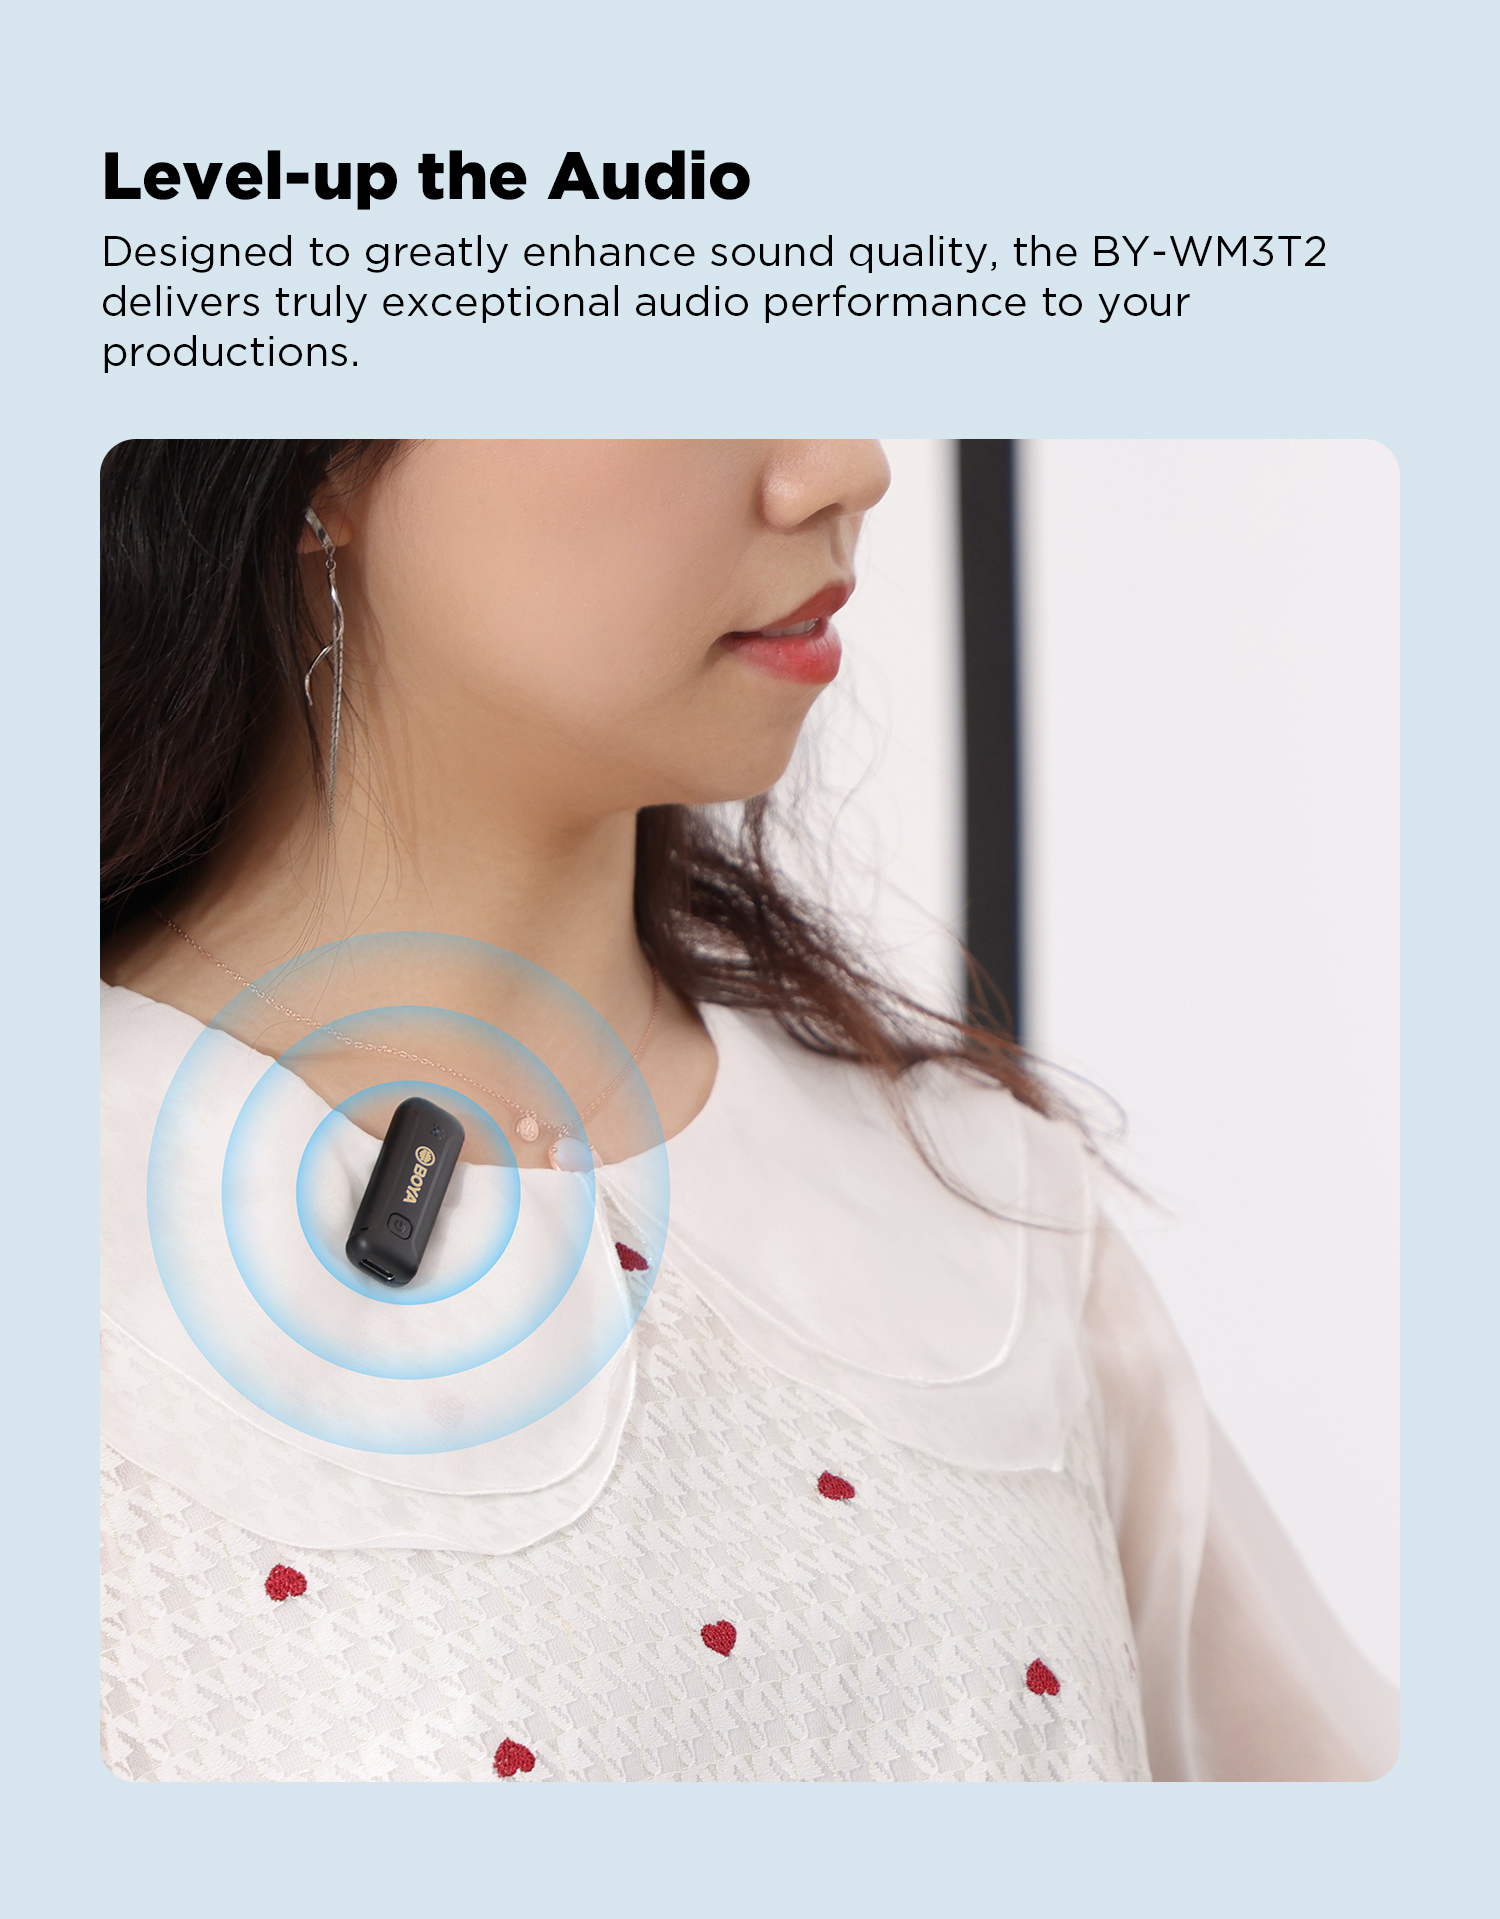 [MẪU MỚI] BOYA BY-WM3T2 Series - Mic thu âm không dây 2.4GHz mini - Hàng Chính Hãng